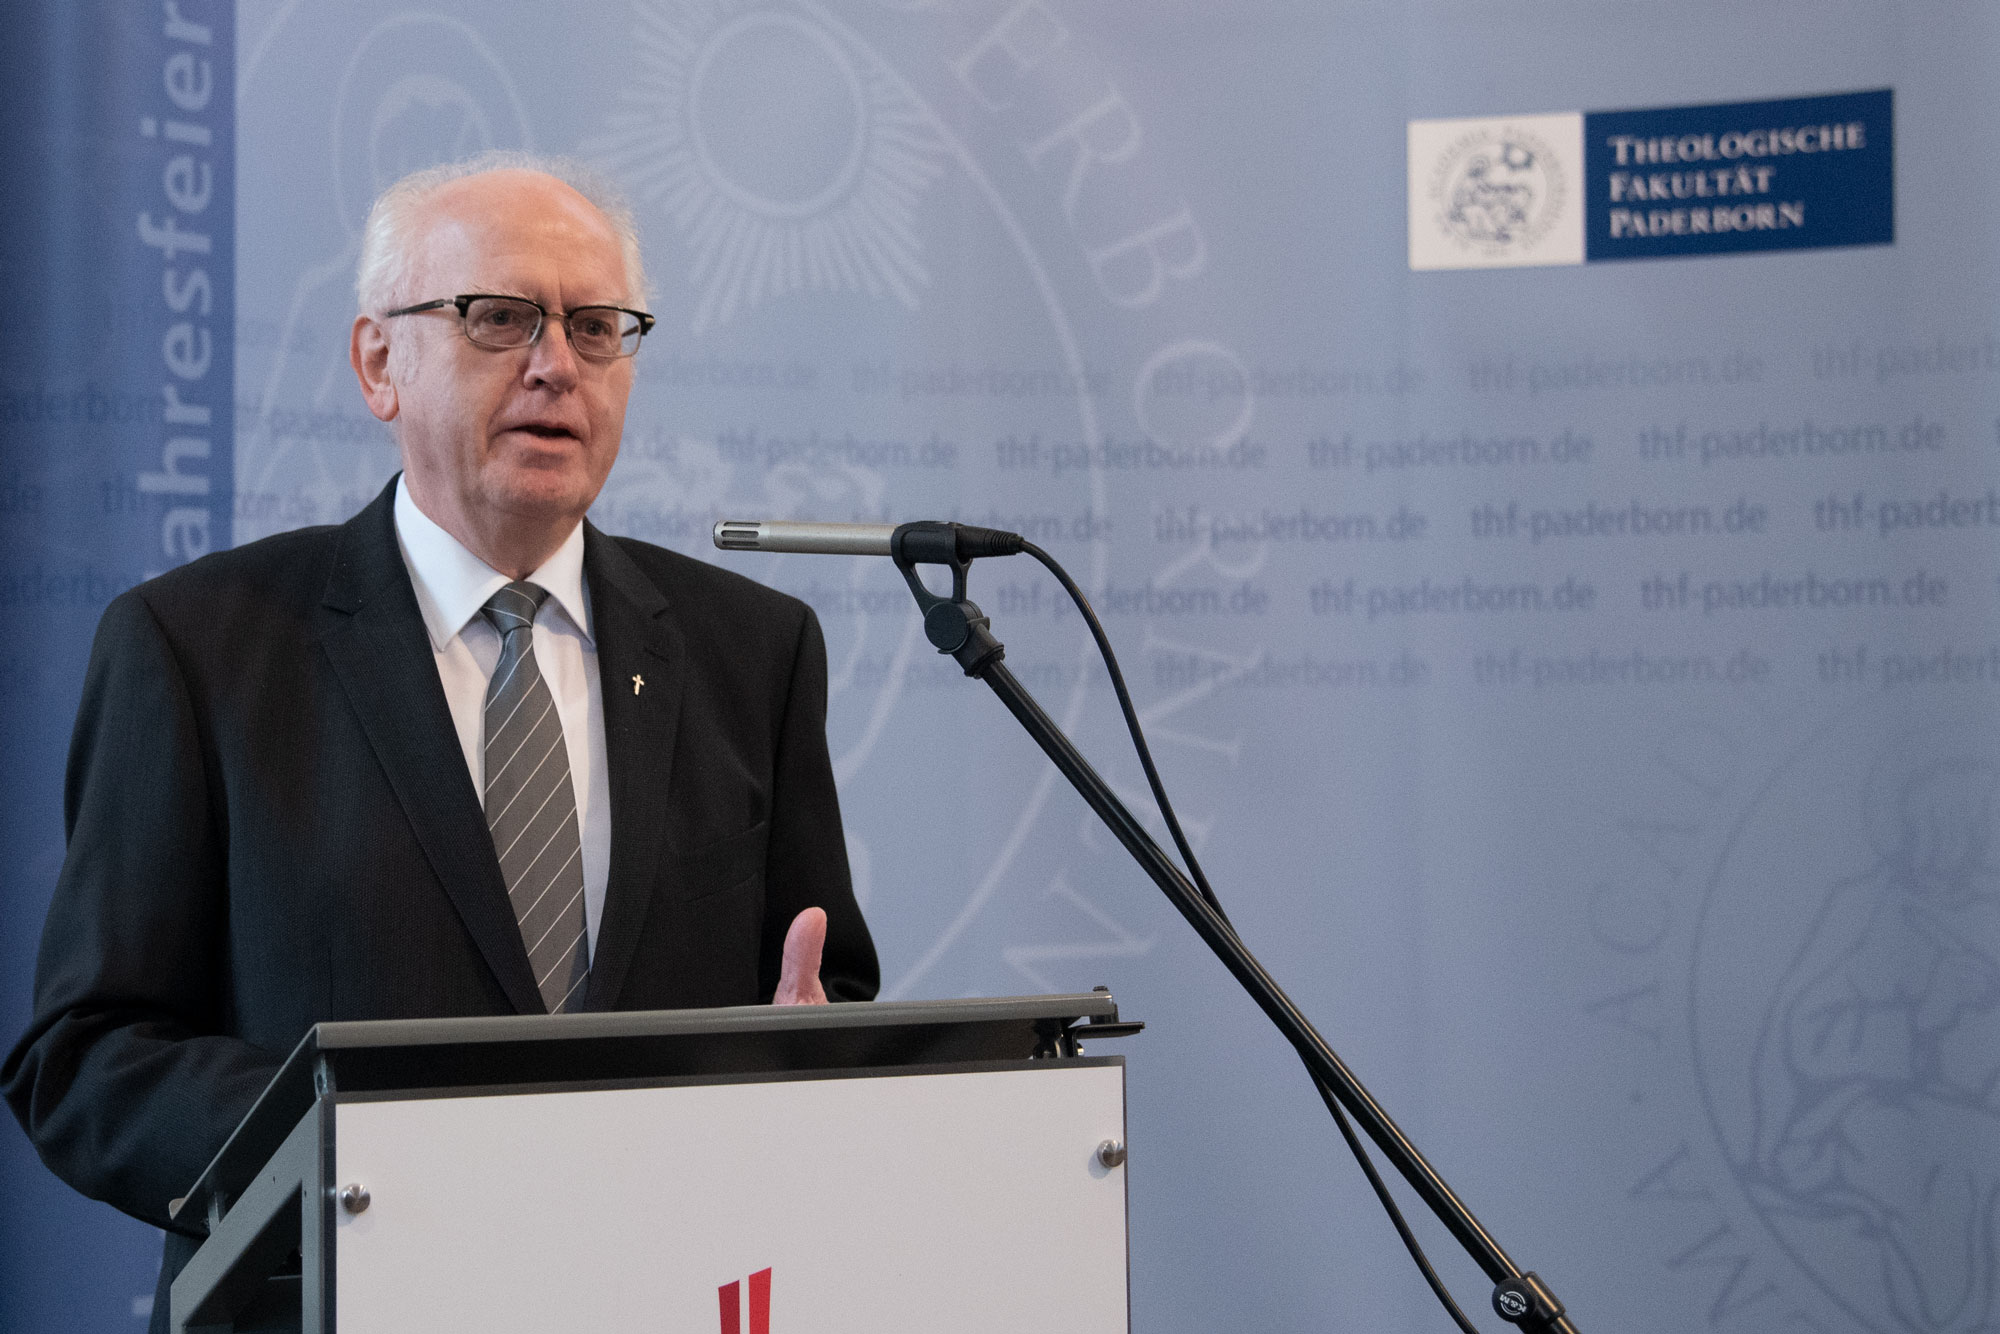 Prof. Dr. Josef Meyer zu Schlochtern hielt im Rahmen der Akademischen Jahresfeier der Theologischen Fakultät Paderborn seine Abschiedsvorlesung.